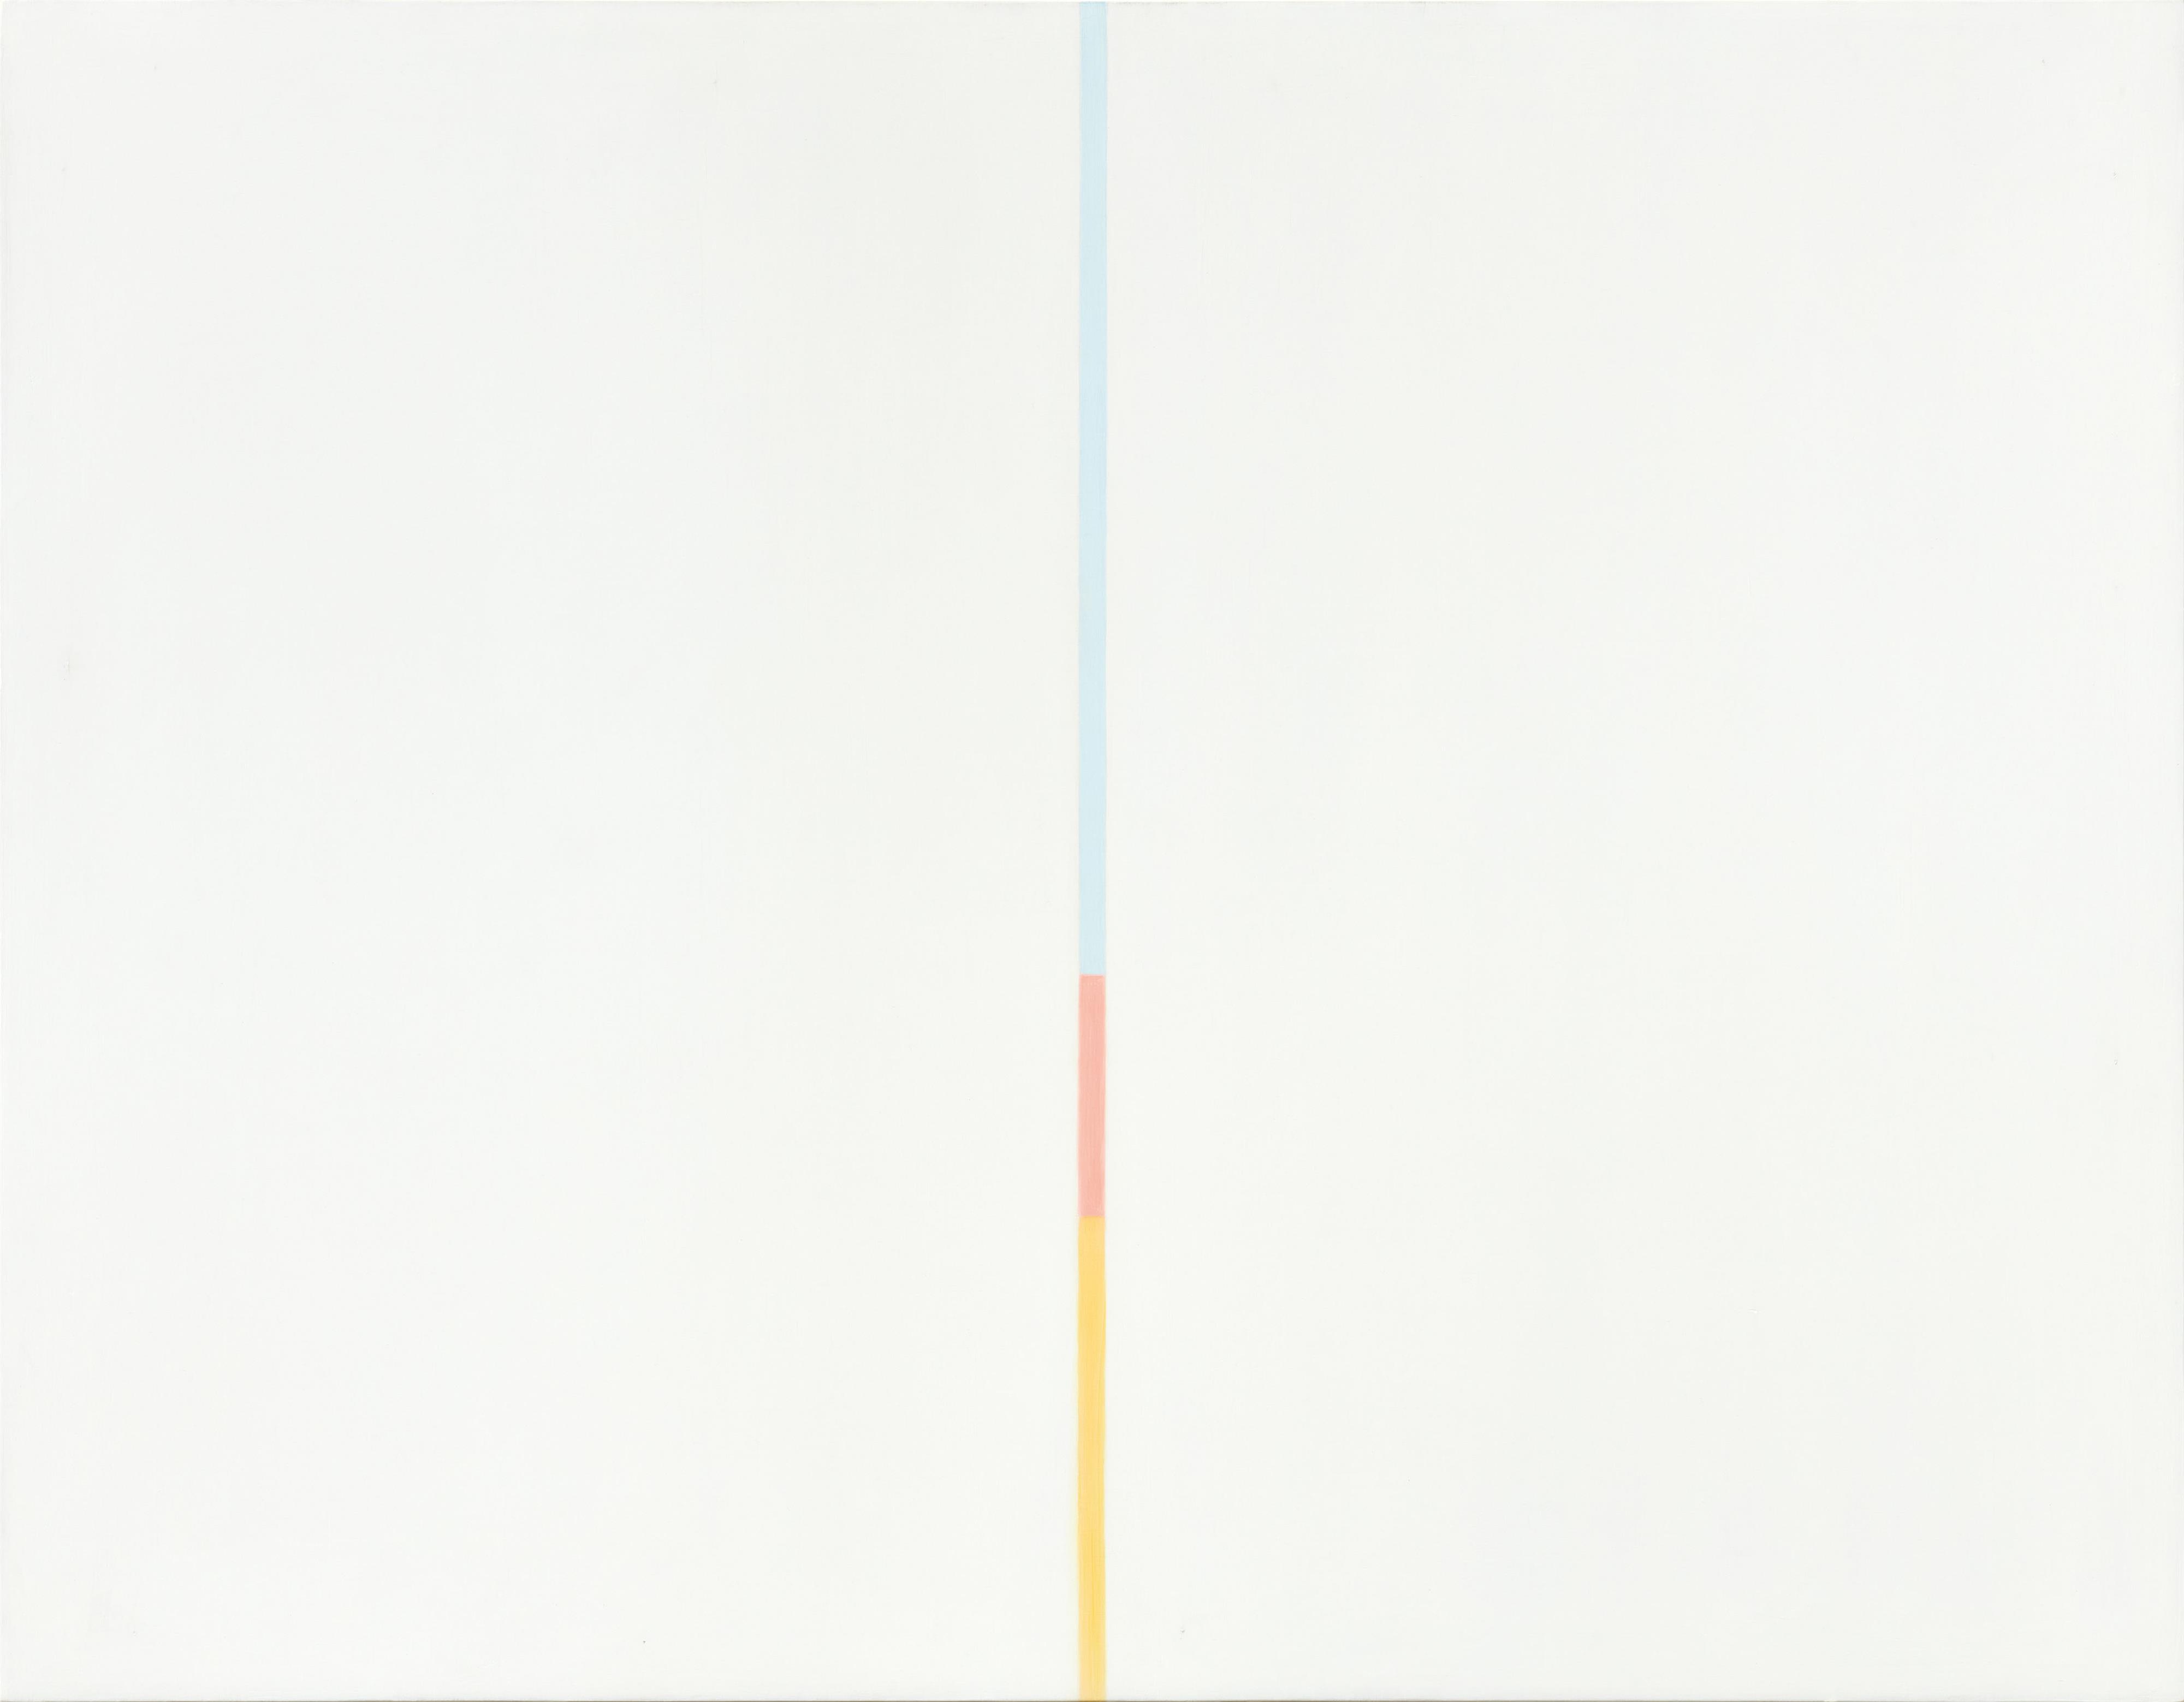 Antonio Calderara - Untitled (Tensione verticale azzurro, rosso, giallo) - image-1